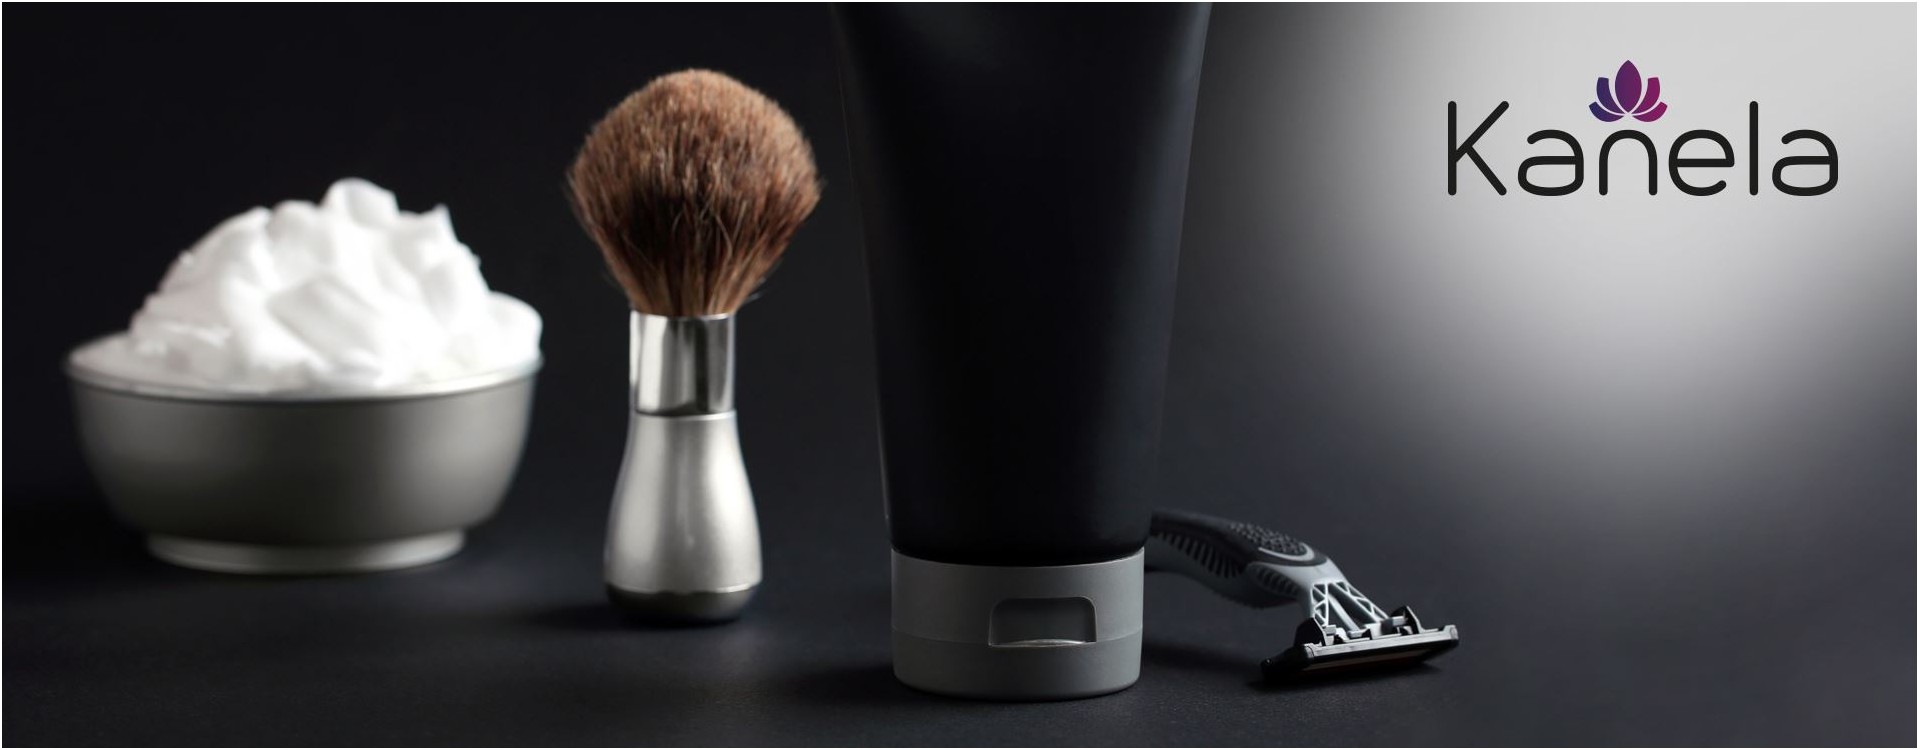 Aftershave: welches ist wirklich gut für Männerhaut?